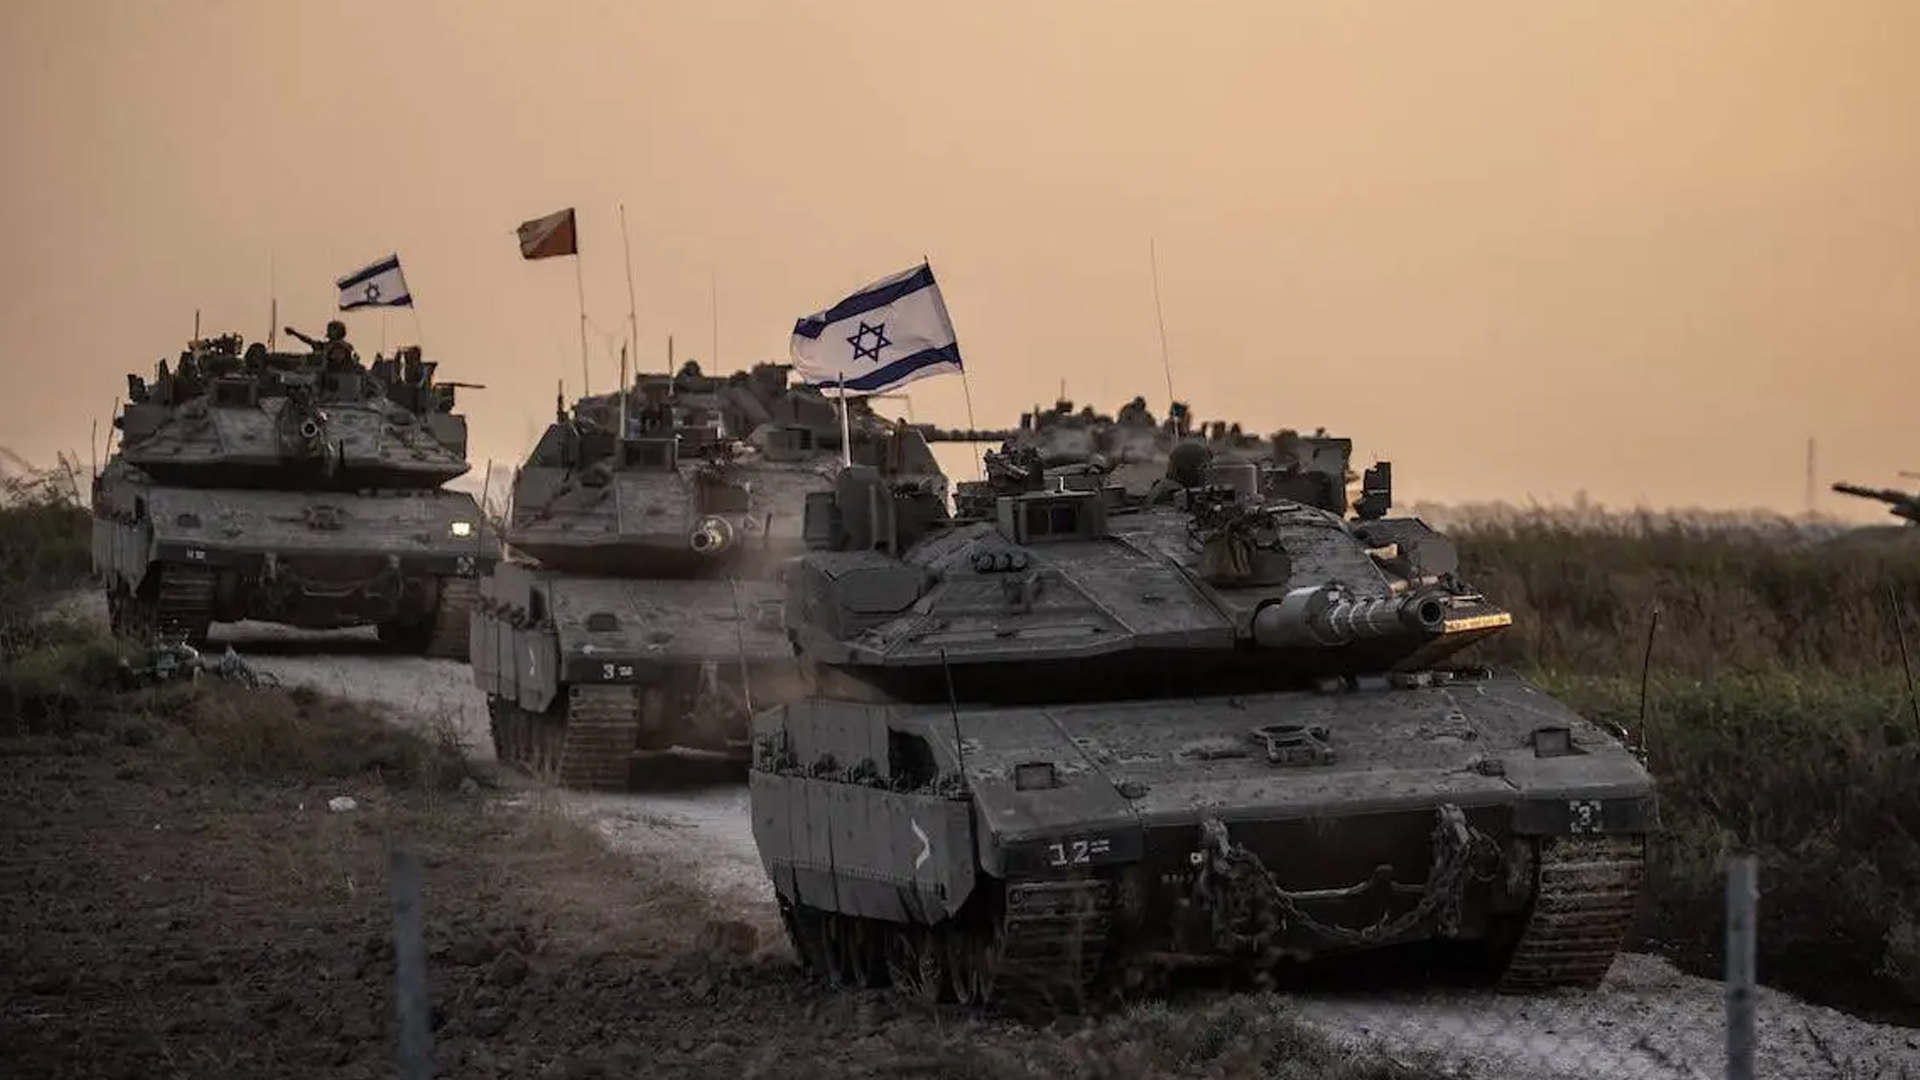 هذه أبرز عمليات سحب القوات الإسرائيلية خلال الحرب على غزة | أخبار – البوكس نيوز